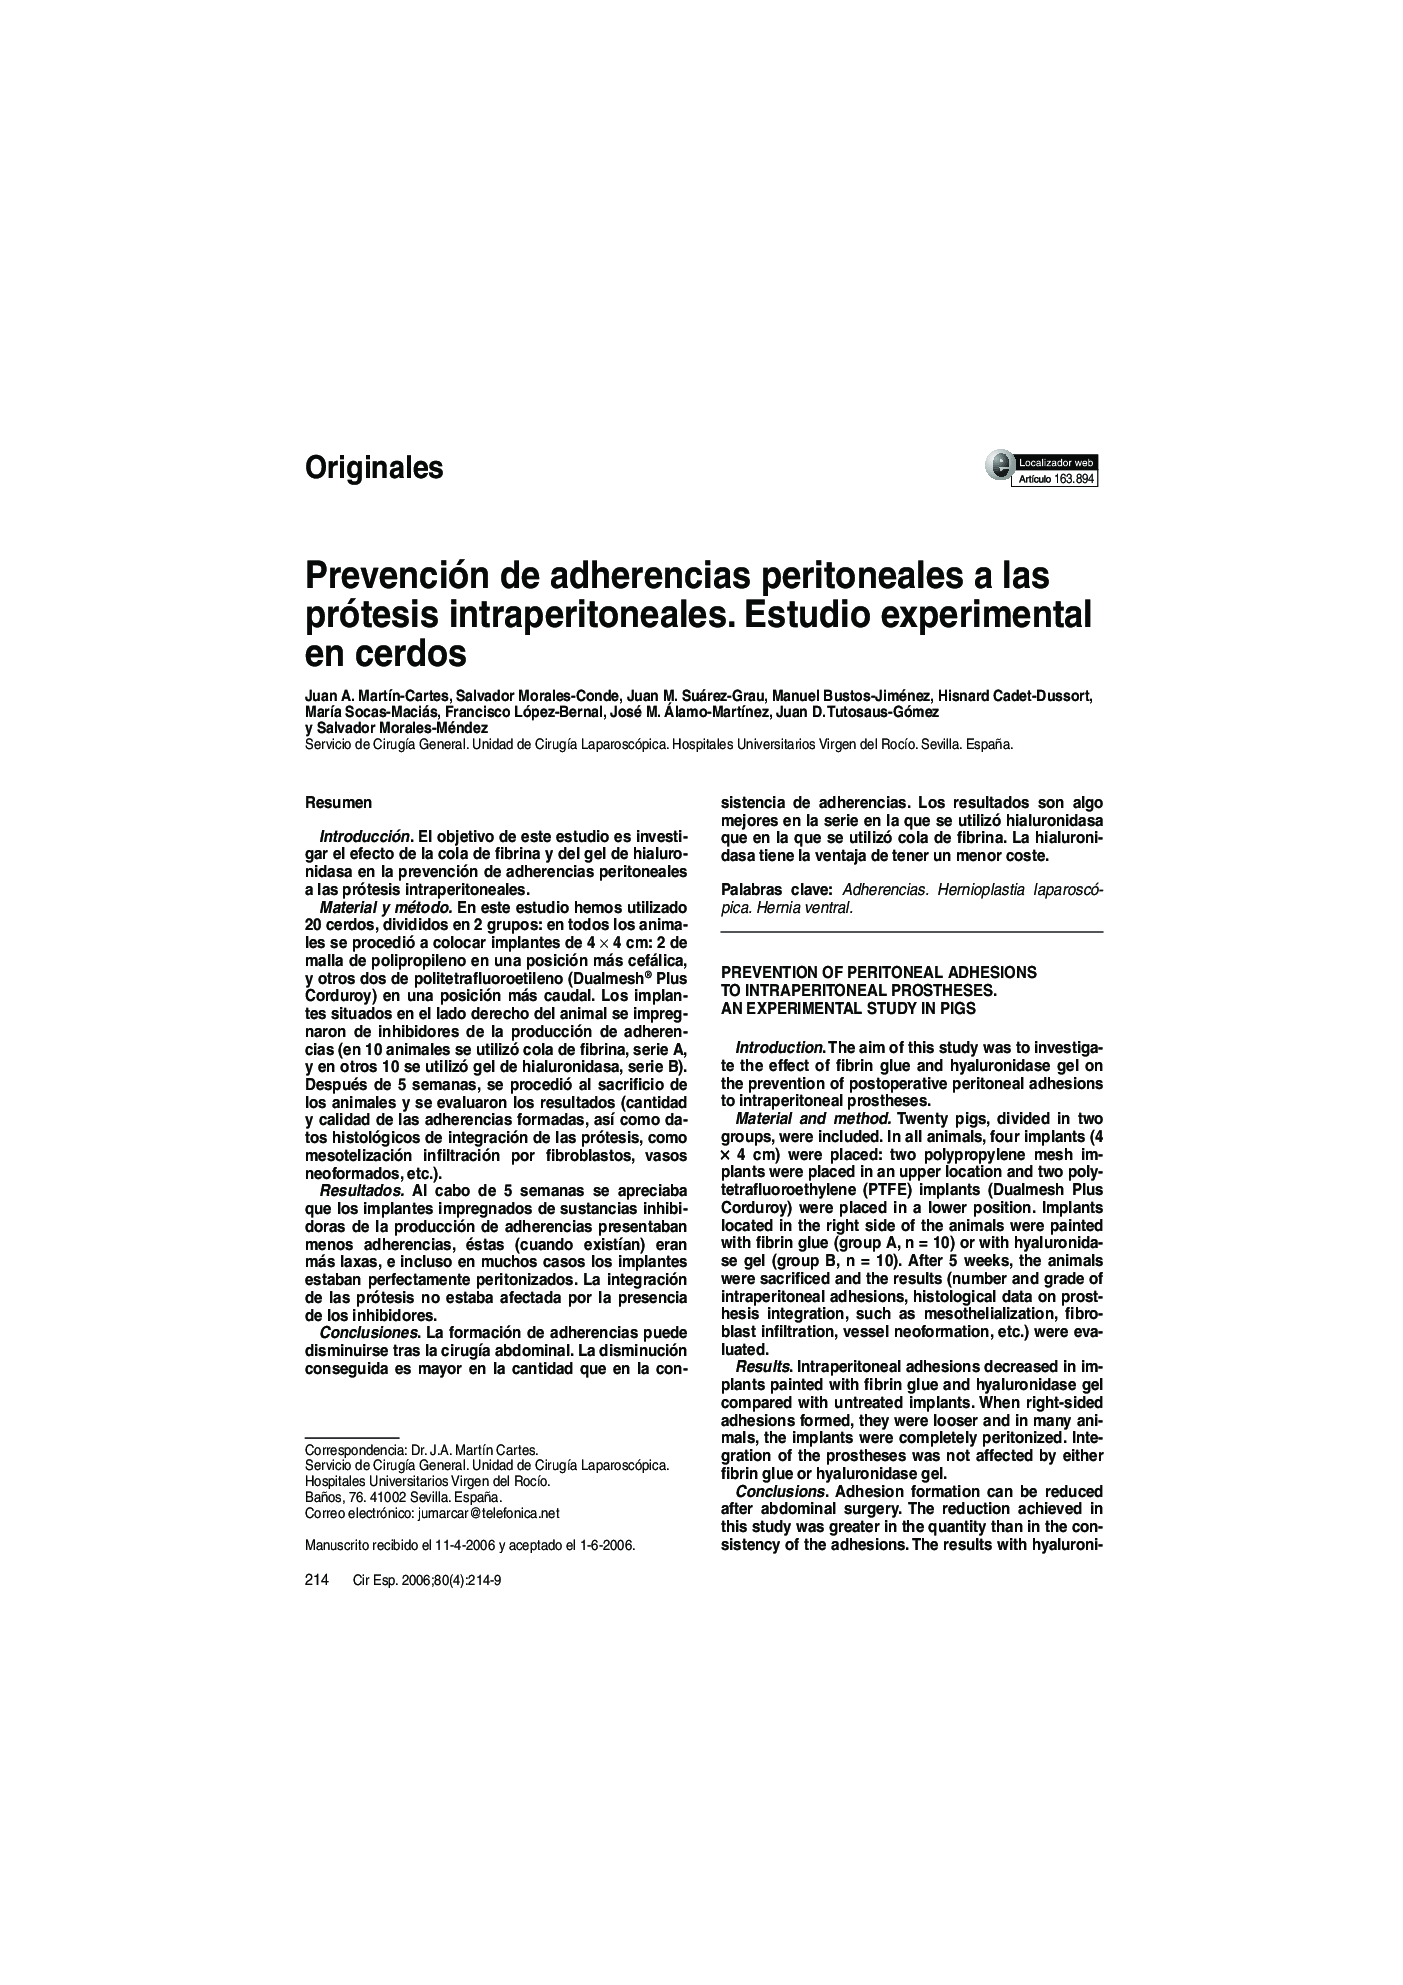 Prevención de adherencias peritoneales a las prótesis intraperitoneales. Estudio experimental en cerdos